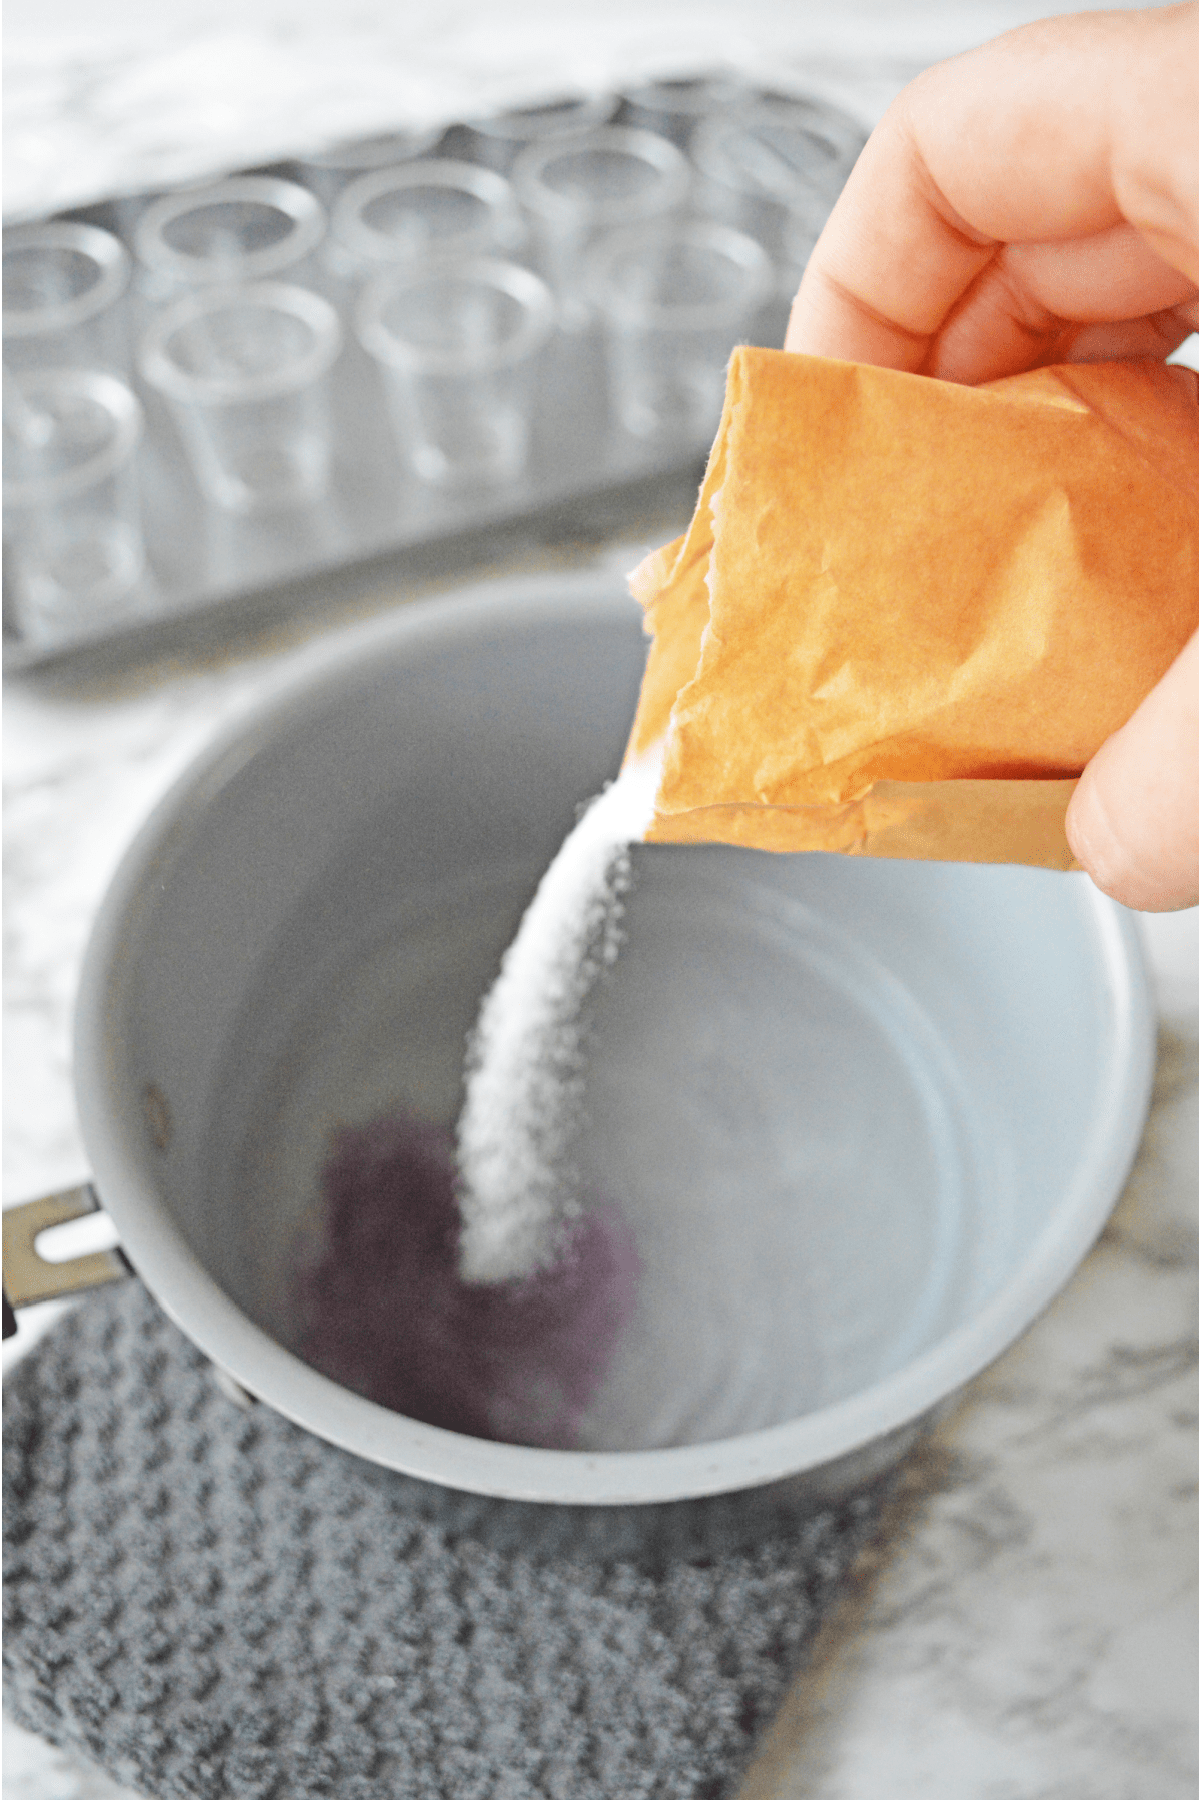 Pouring jello mix into a bowl